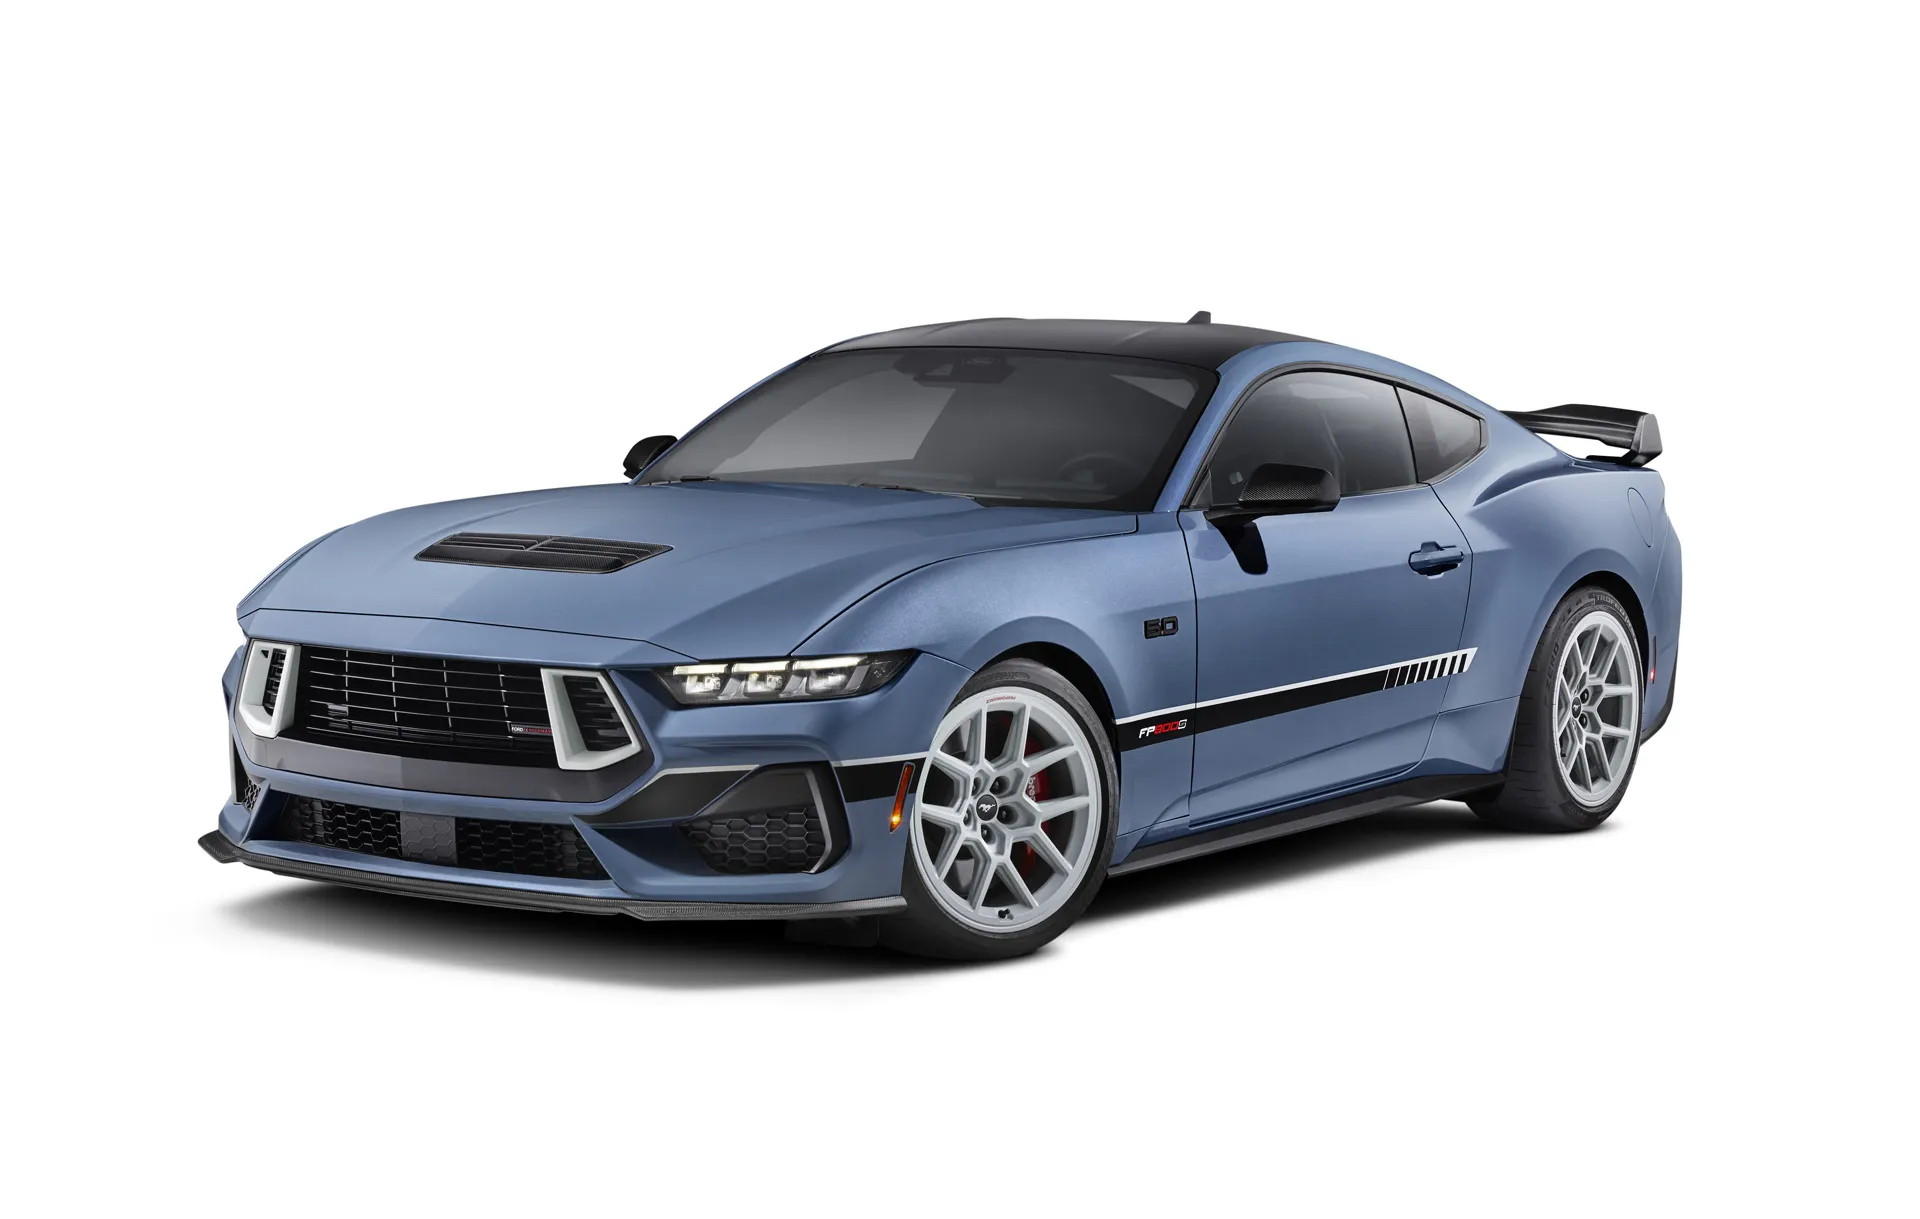 Ford’s nieuwe Mustang GT-supercharger brengt Coyote op 800 pk